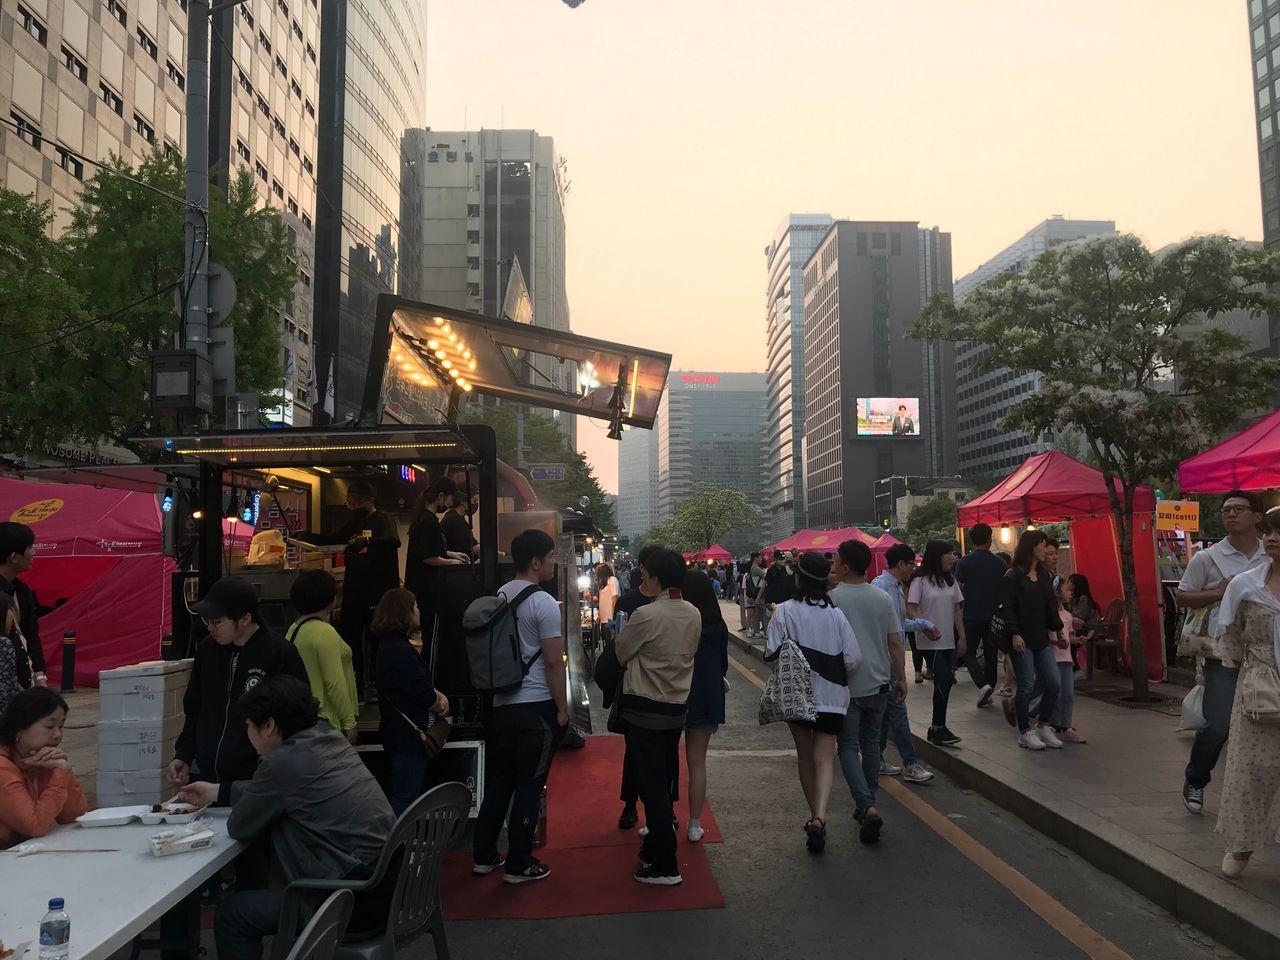 Visit to Cheonggyecheon Night Market